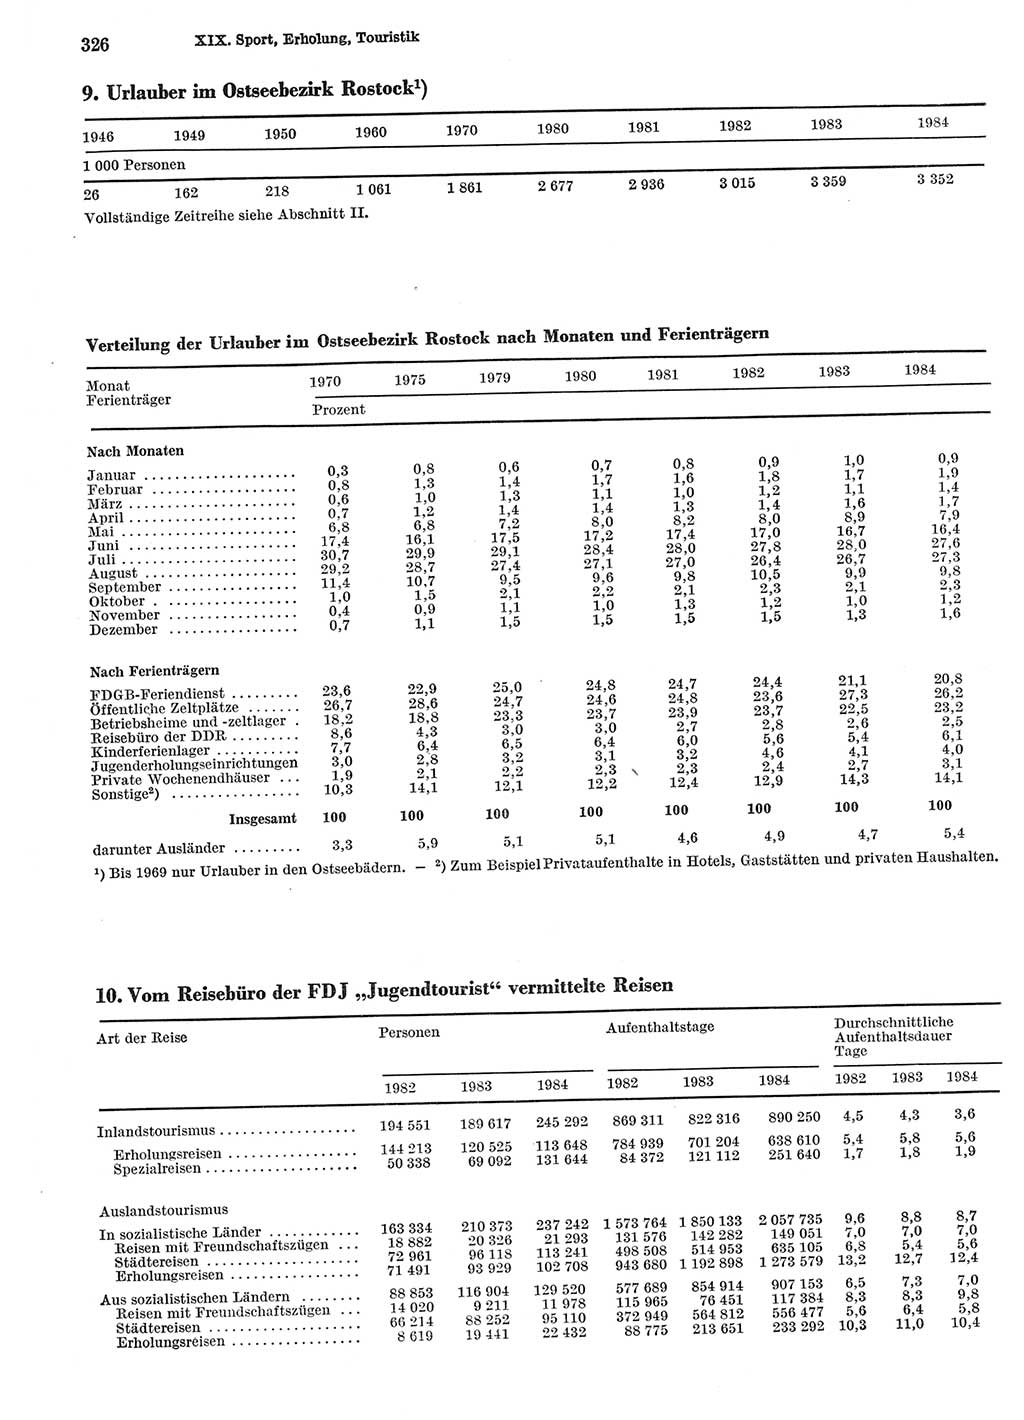 Statistisches Jahrbuch der Deutschen Demokratischen Republik (DDR) 1985, Seite 326 (Stat. Jb. DDR 1985, S. 326)